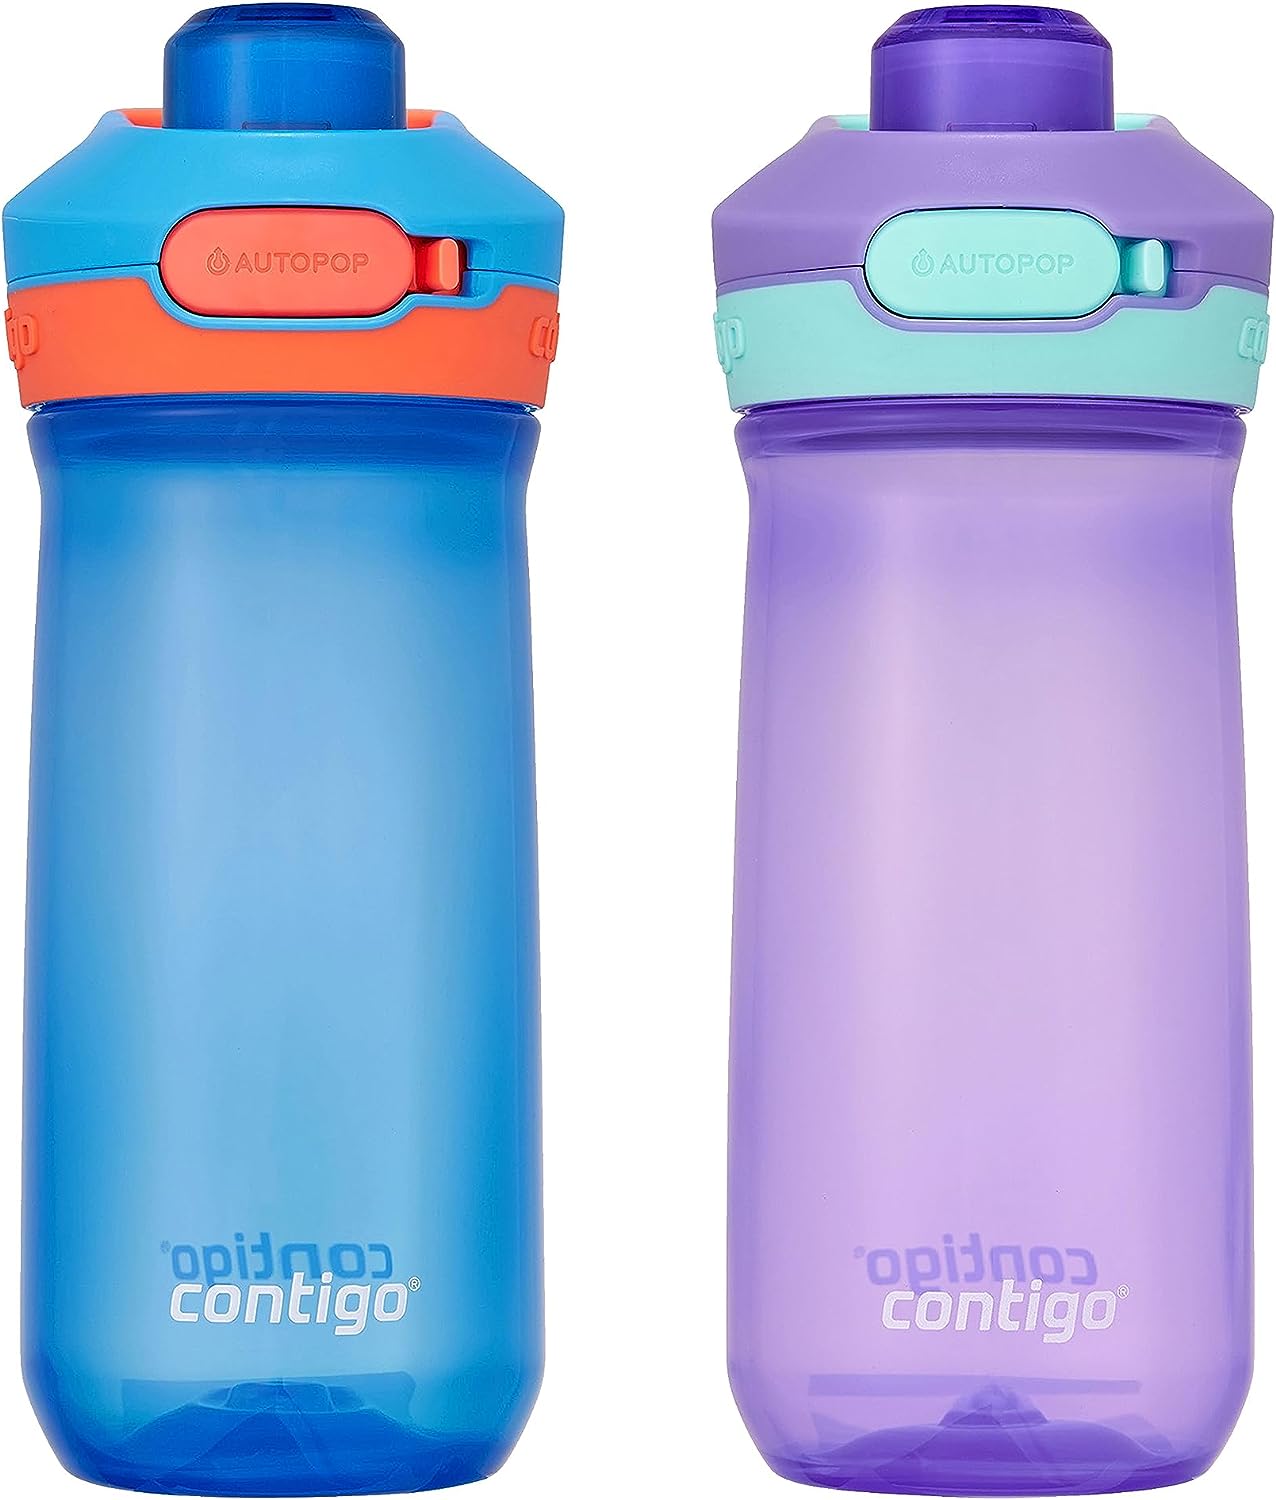 זוג בקבוקי ילדים קונטיגו JESSIE סגול וכחול 420 מ"ל - Contigo